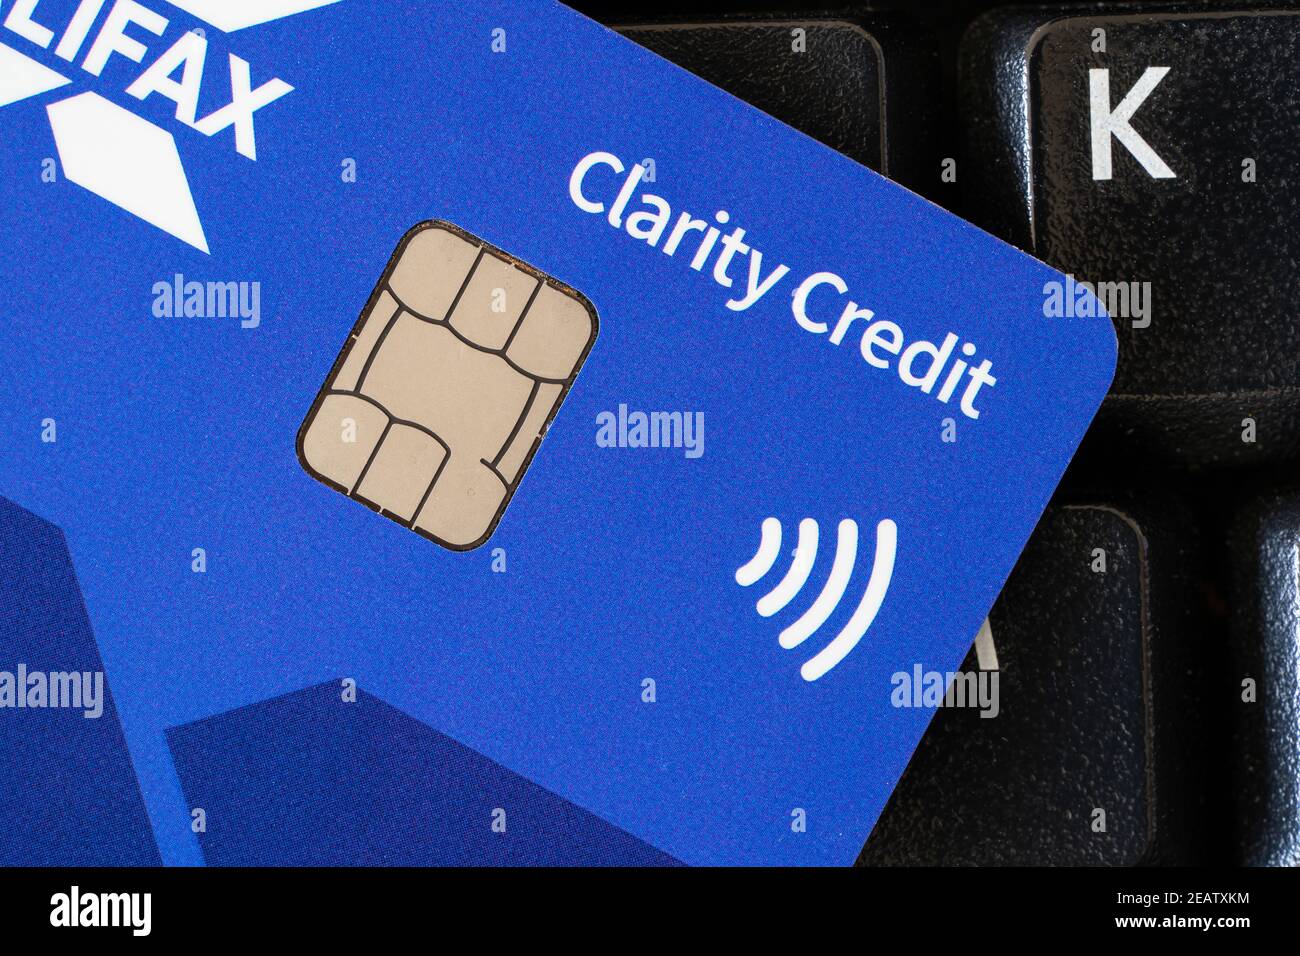 Primer plano en una Tarjeta Halifax Clarity - una tarjeta de crédito del Reino Unido que muestra un chip y el logotipo para el pago sin contacto. Tema: Chip y pin, deuda, pago sin efectivo Foto de stock